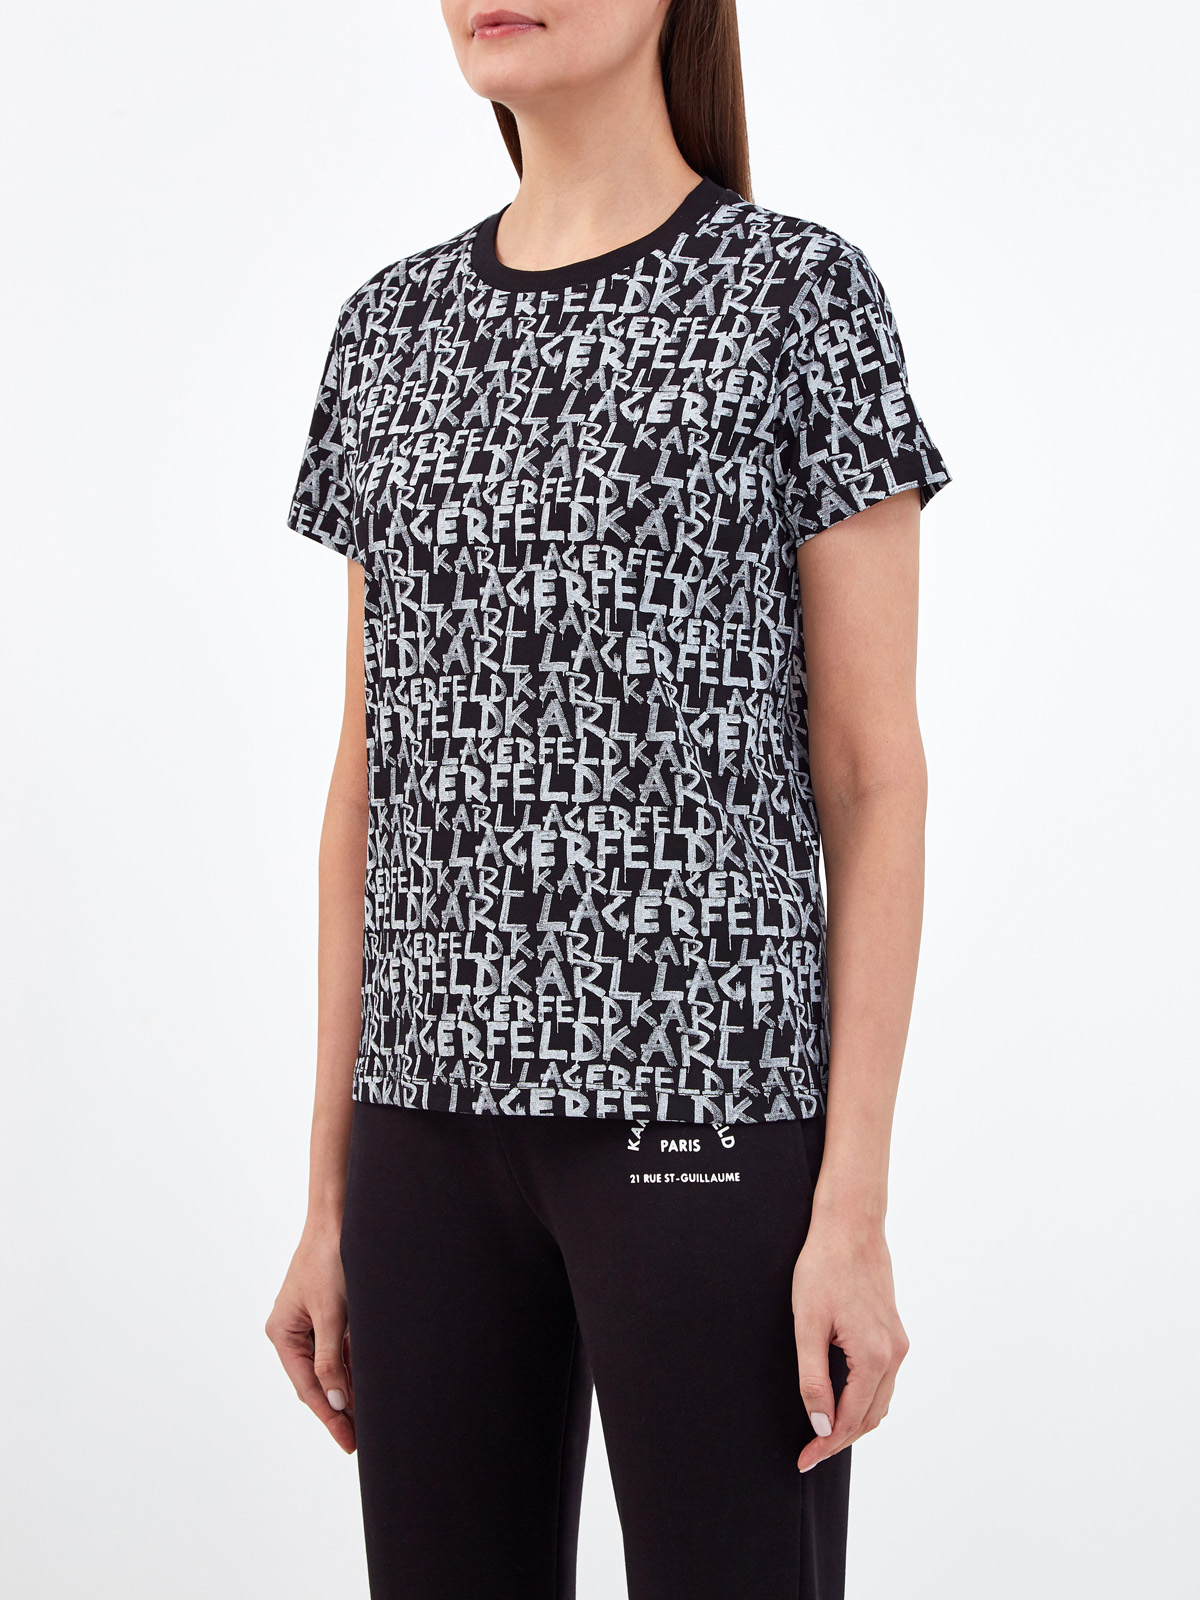 Хлопковая футболка с контрастным принтом в стиле леттеринг KARL LAGERFELD, цвет черный, размер XS;S;M;L - фото 3